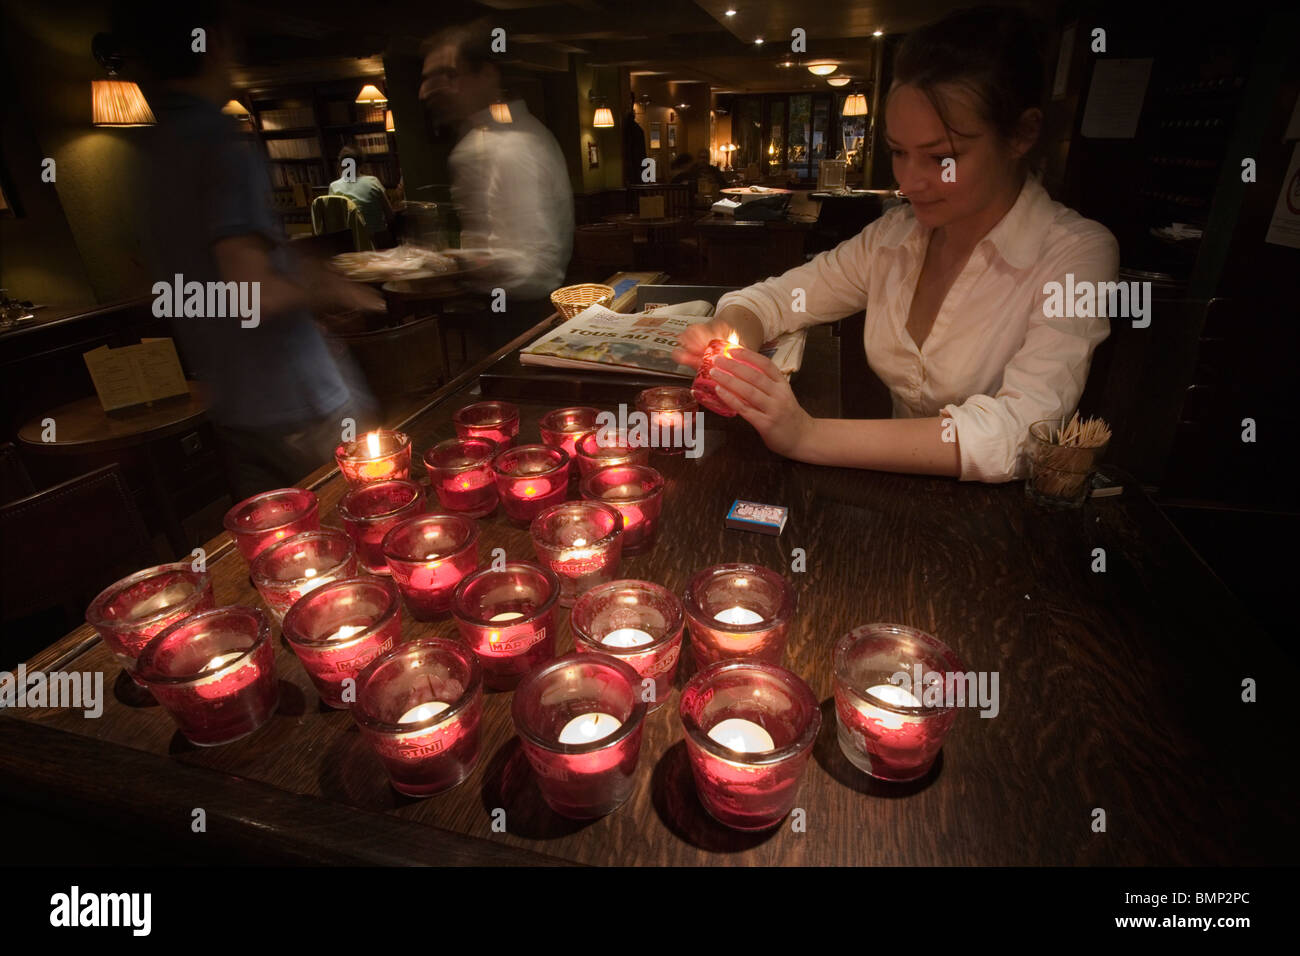 Une des bougies d'éclairage dans un bar, Paris Banque D'Images